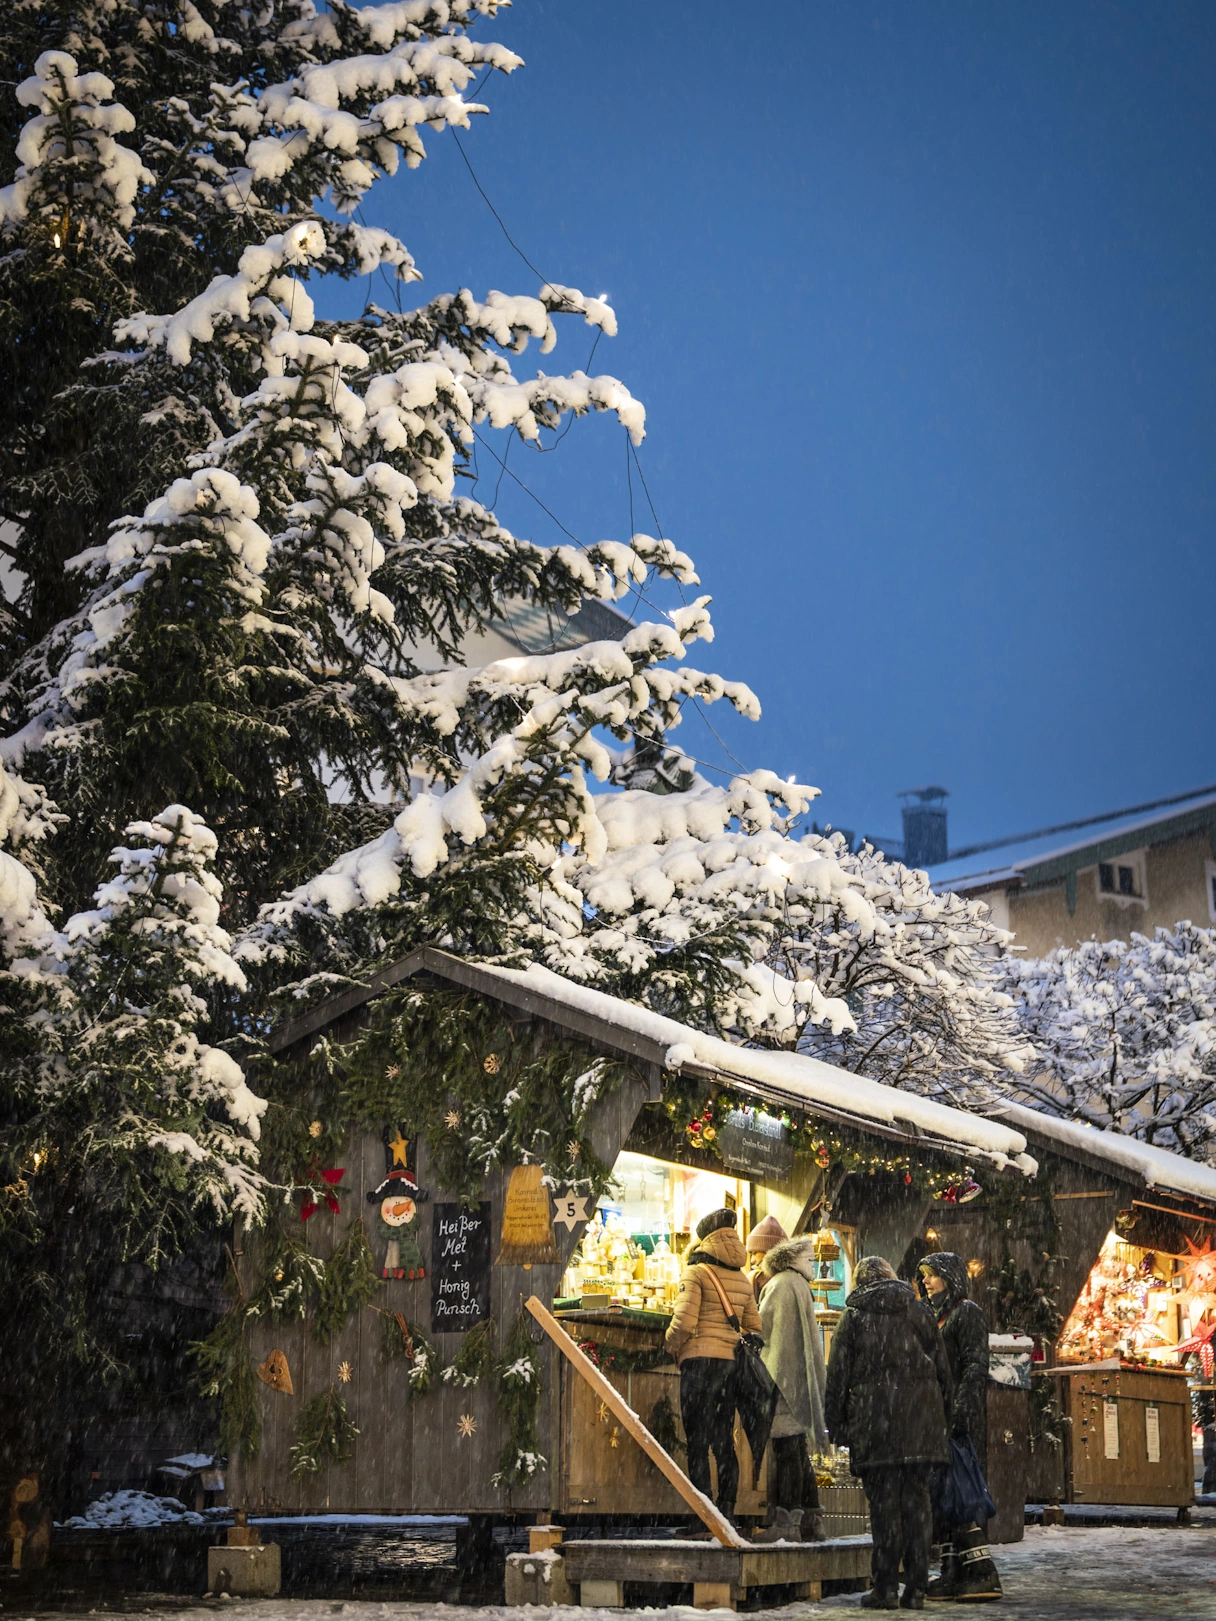 Große Tanne mit Schnee bedeckt, darunter ein Christkindlmarkt Stand